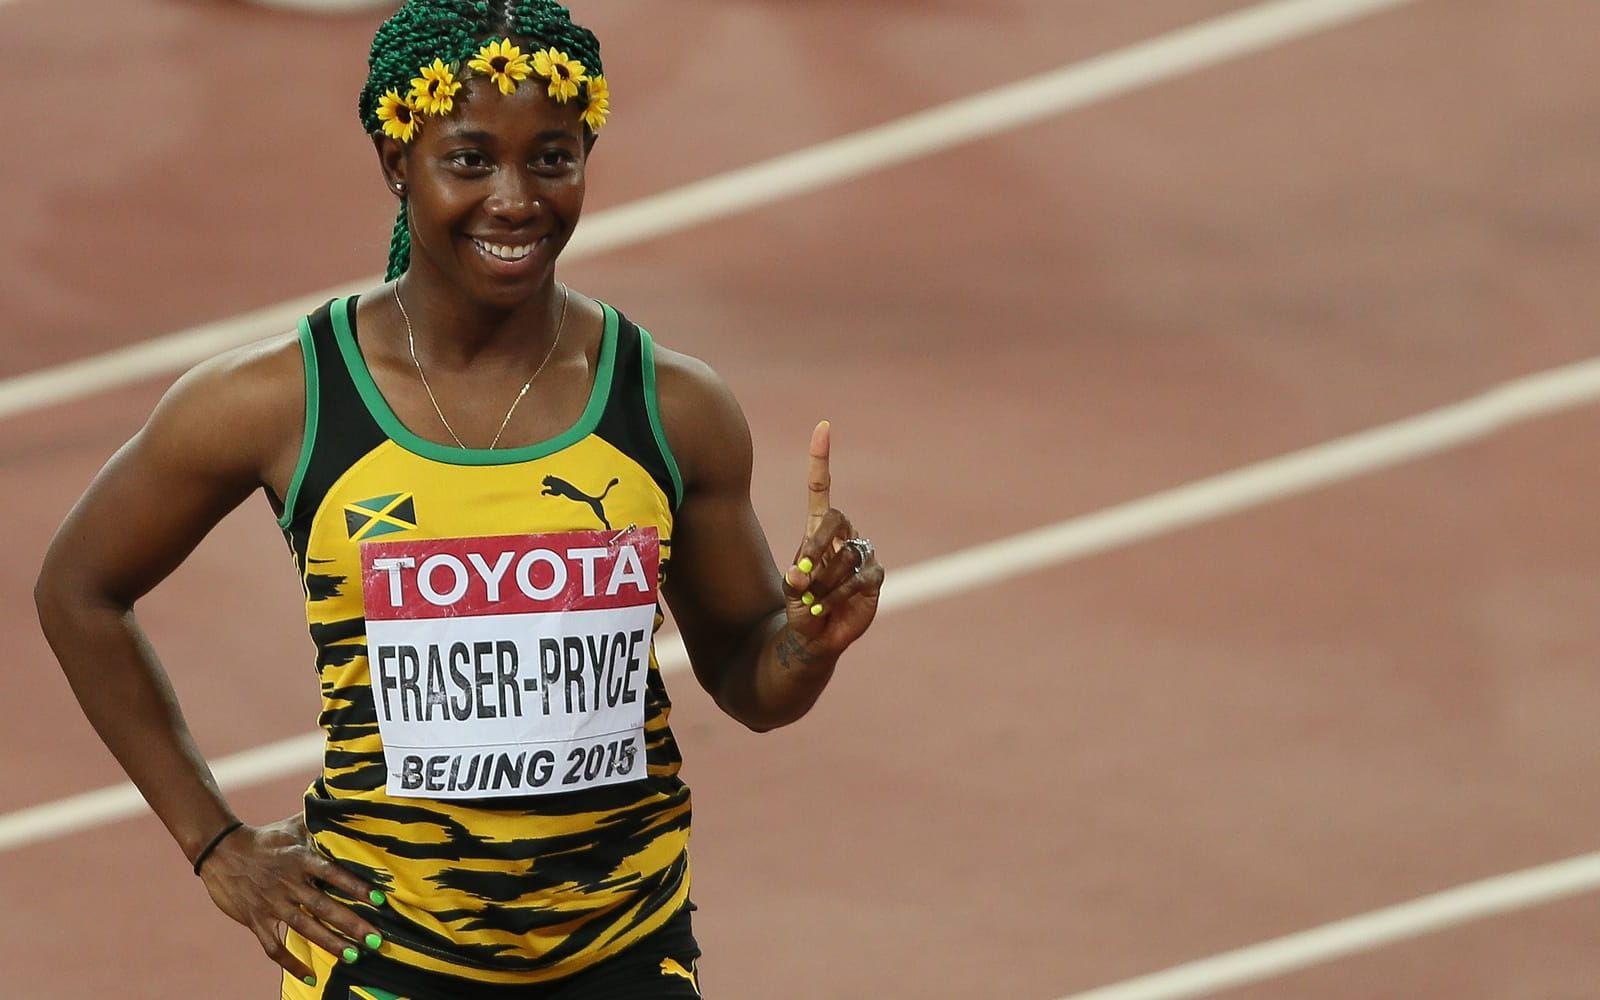 Shelly-Ann Fraser-Pryce, Jamaica. Har vunnit de två senaste OS-finalerna på 100 meter. Och vann VM-guld på samma distans förra året. 29-åringen väntas ta flera nya medaljer i Rio. Foto: Bildbyrån